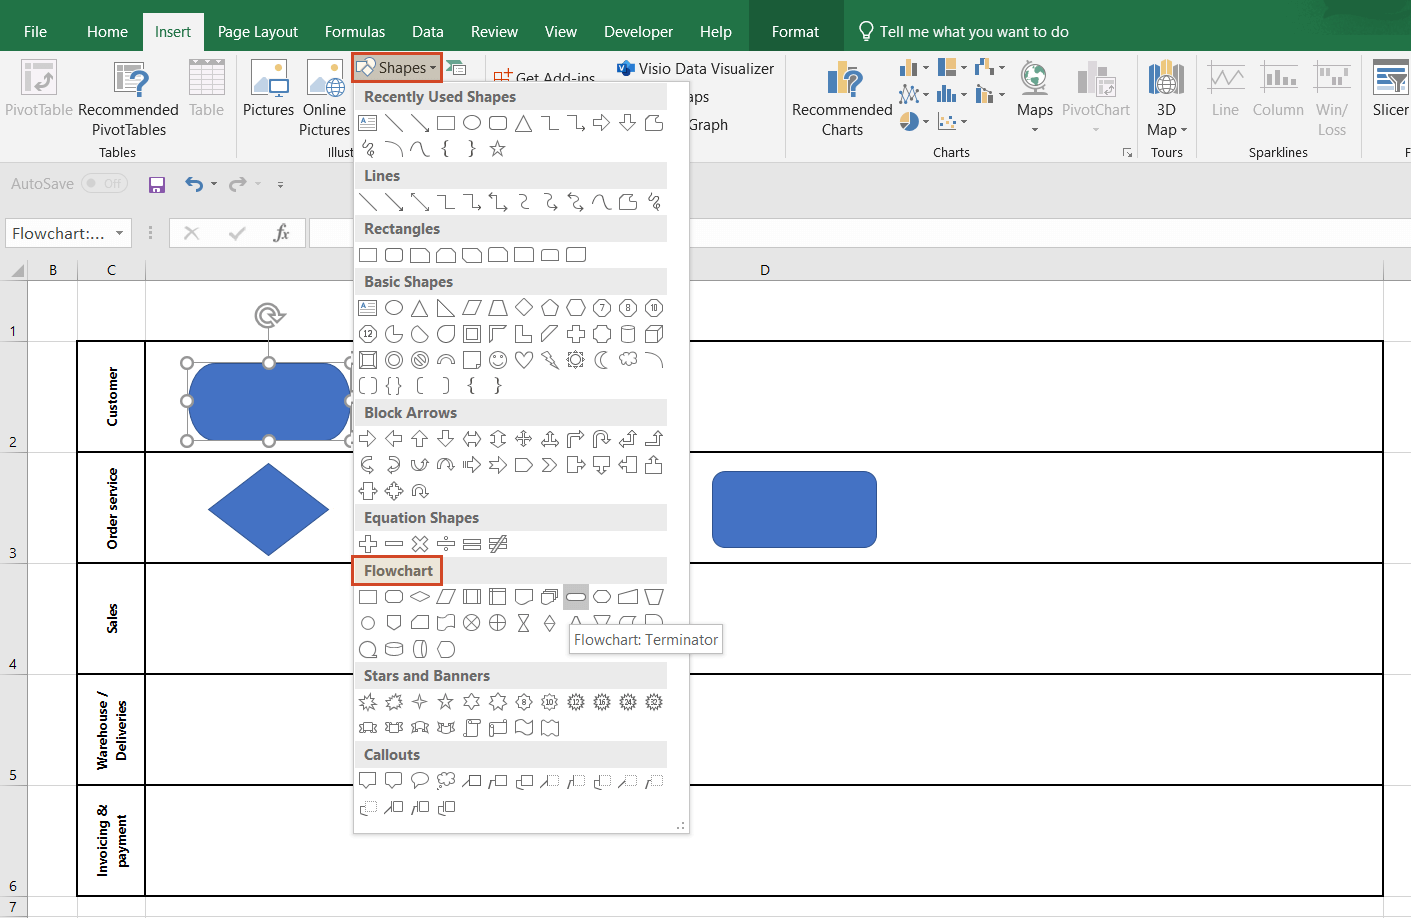 Insert shapes in manual swimlane diagram in Excel.